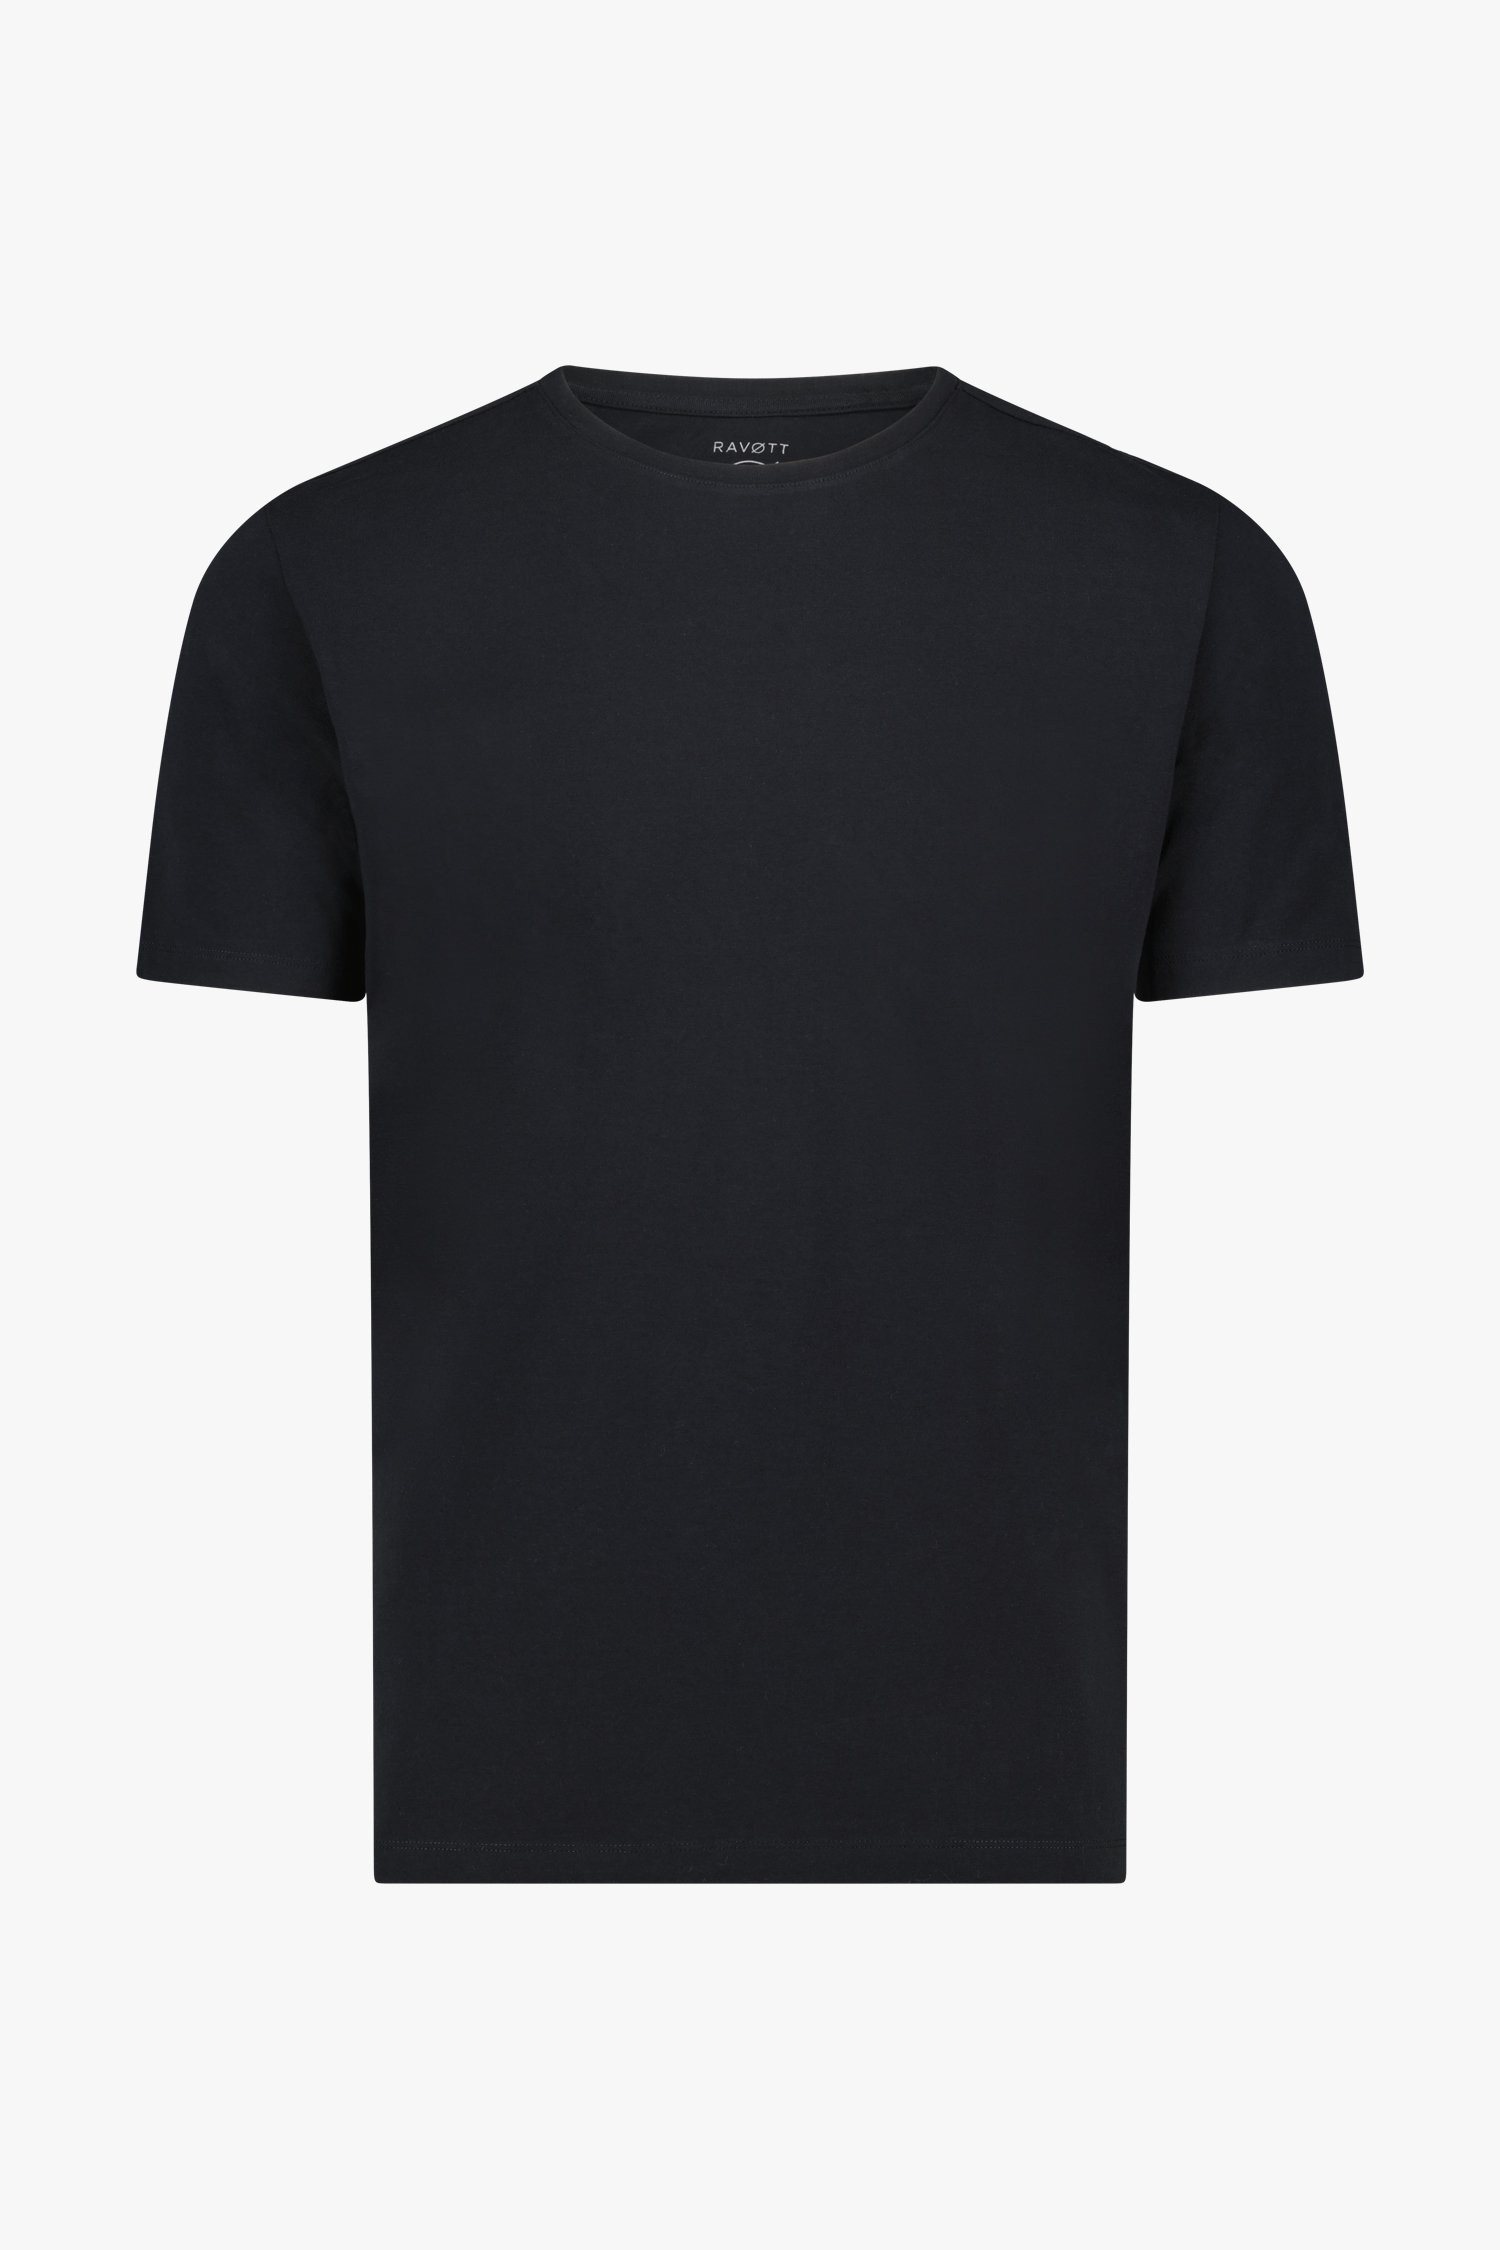 Zwarte T-shirt met ronde hals van Ravøtt voor Heren